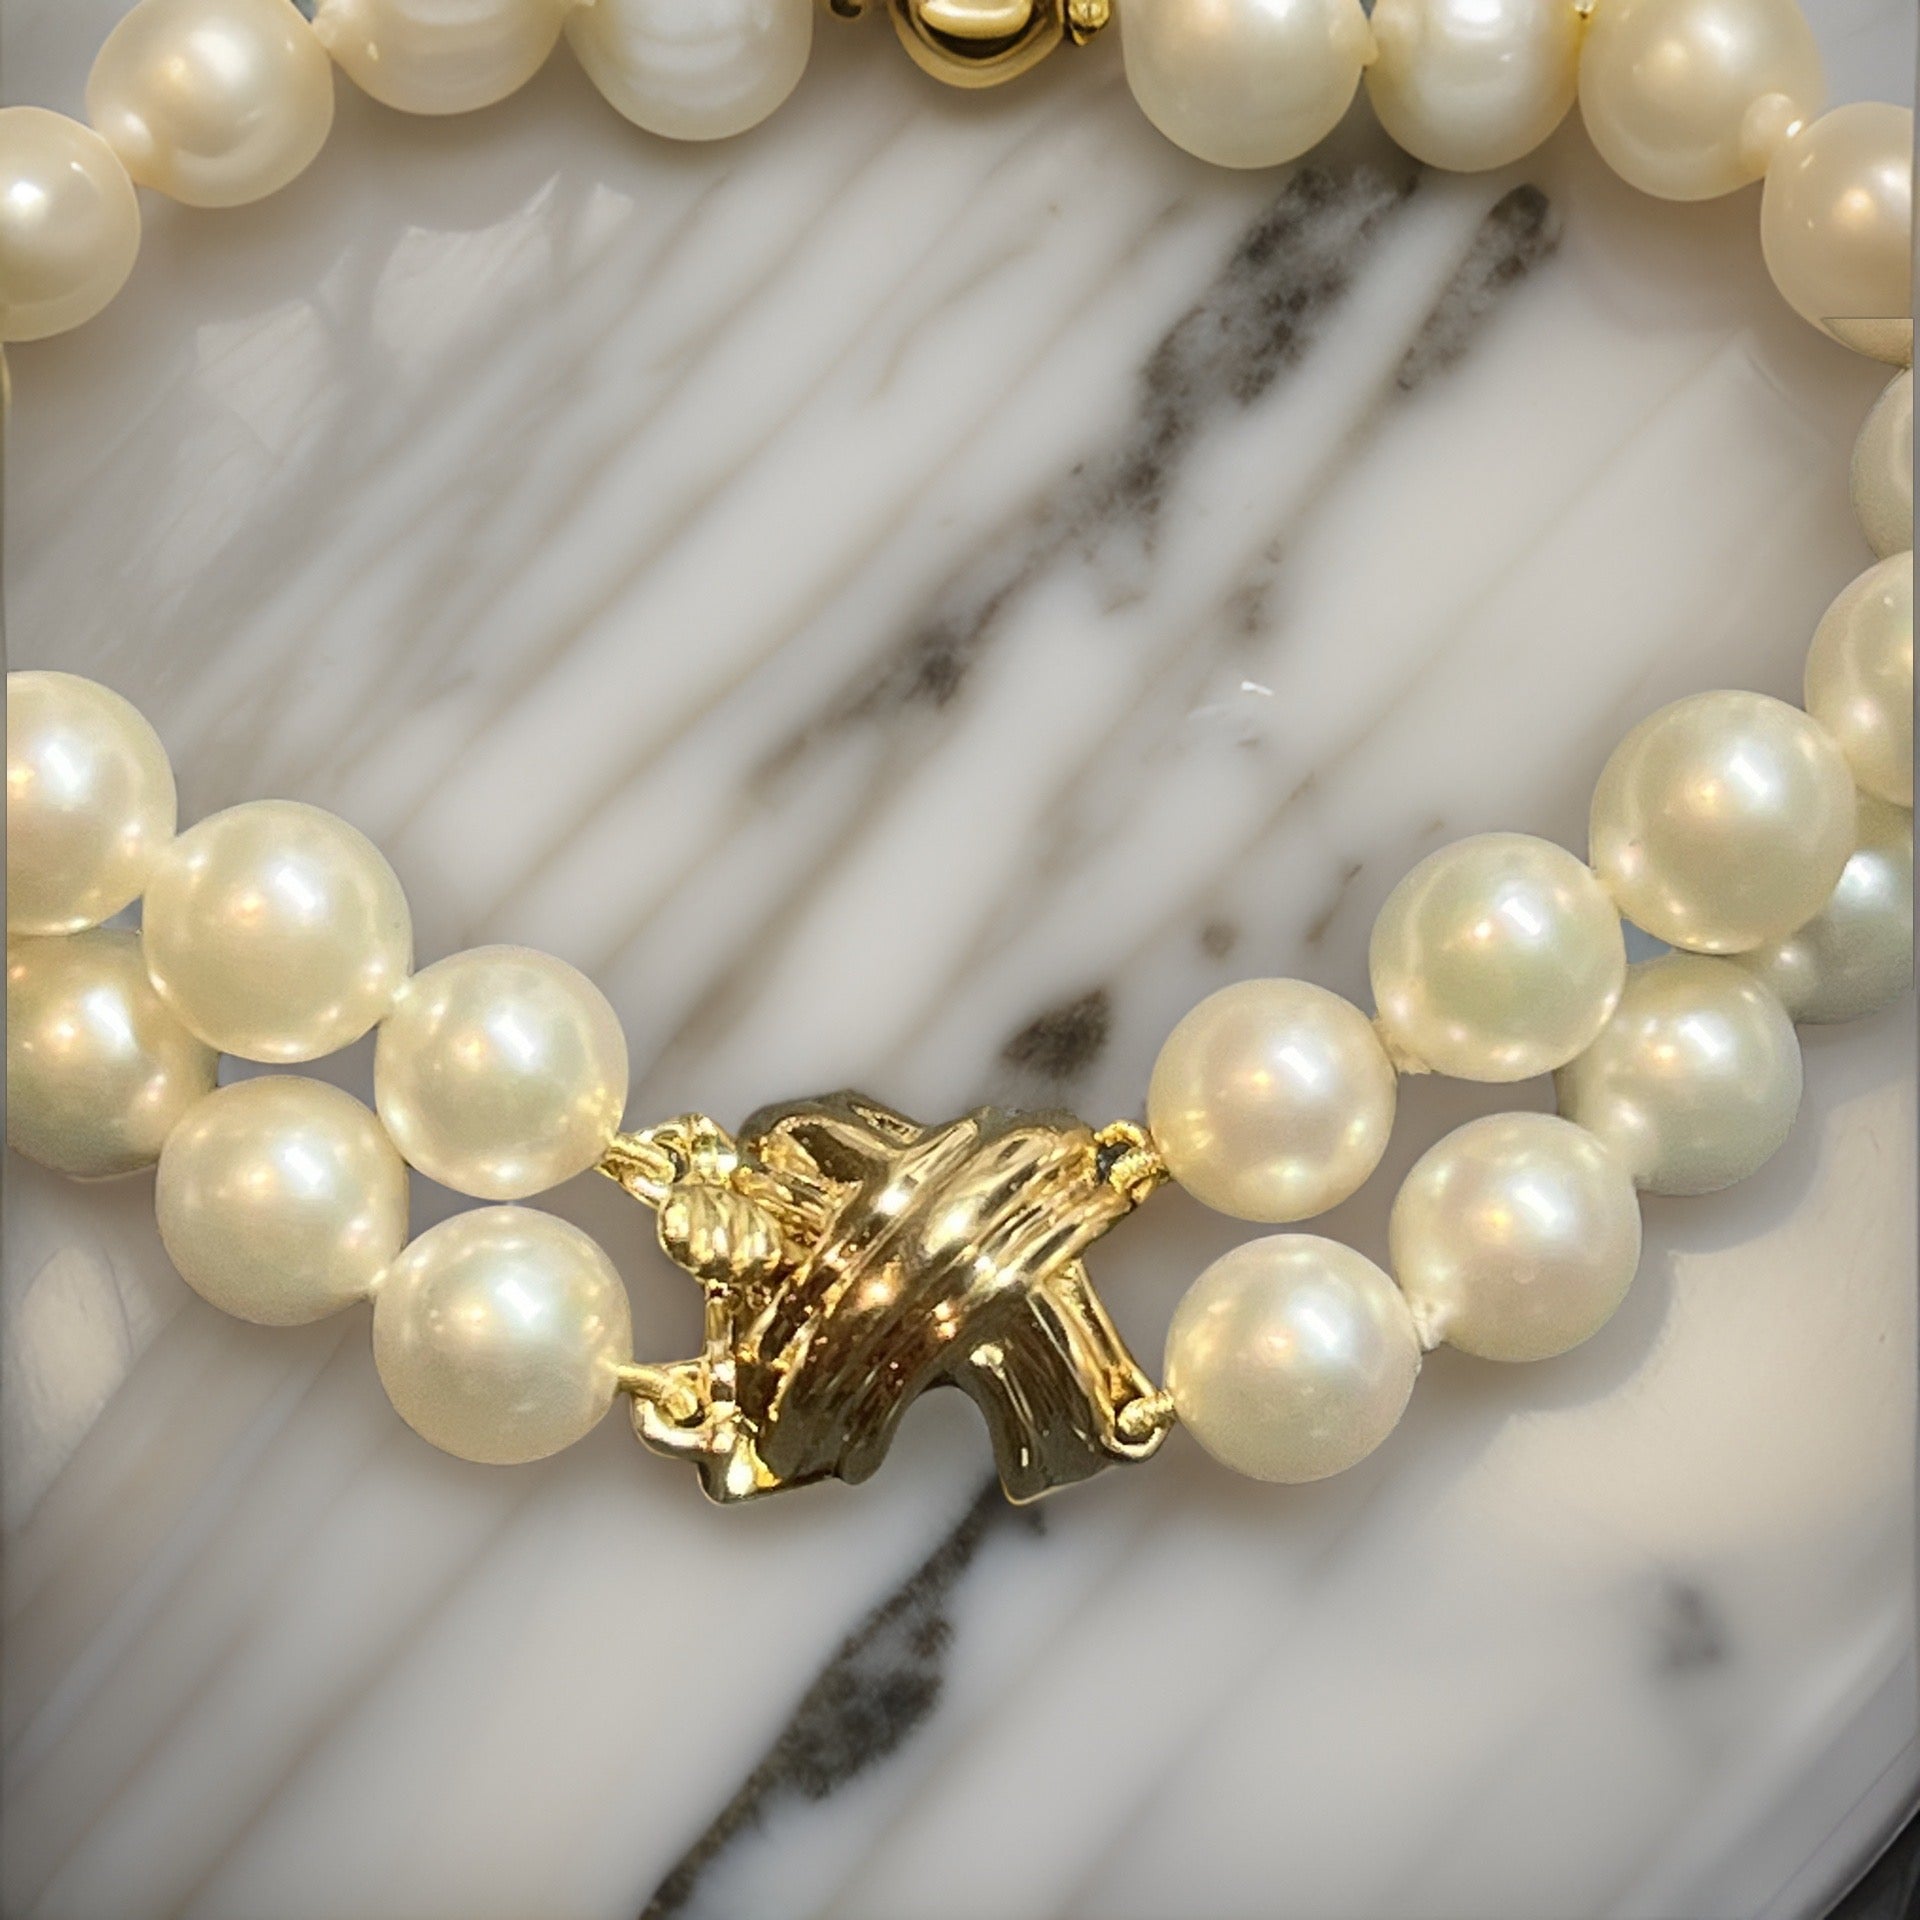 Tiffany & Co Estate Pearl Bracelet 7" 18k Gold 7 mm Certified $6,975 401396 - Certified Fine Jewelry